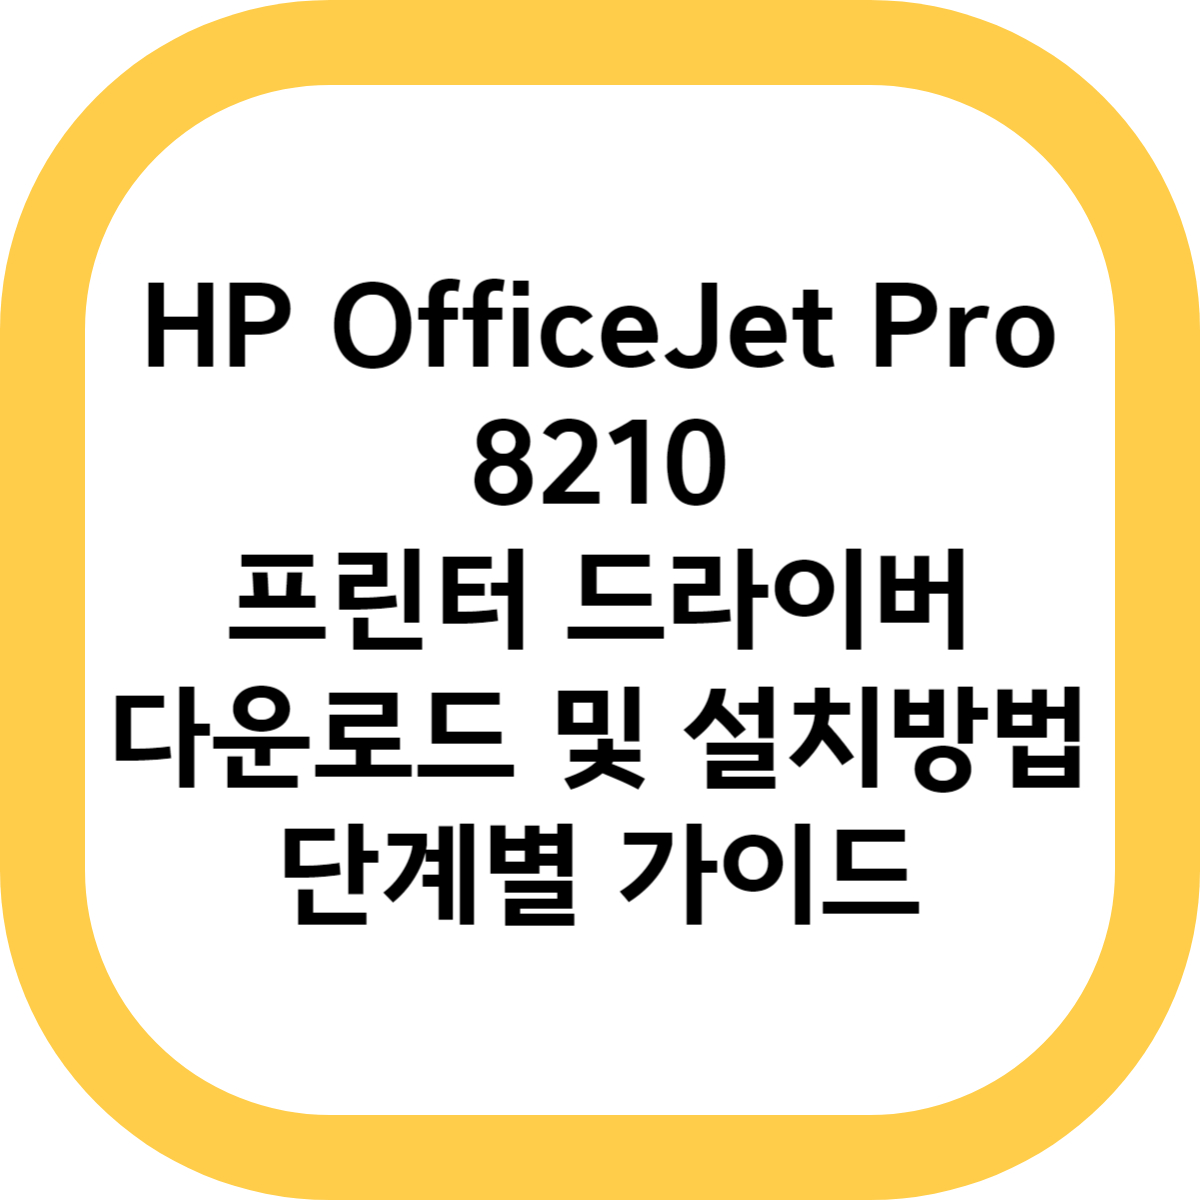 HP OfficeJet Pro 8210 프린터 드라이버 다운로드 및 설치방법 단계별 가이드